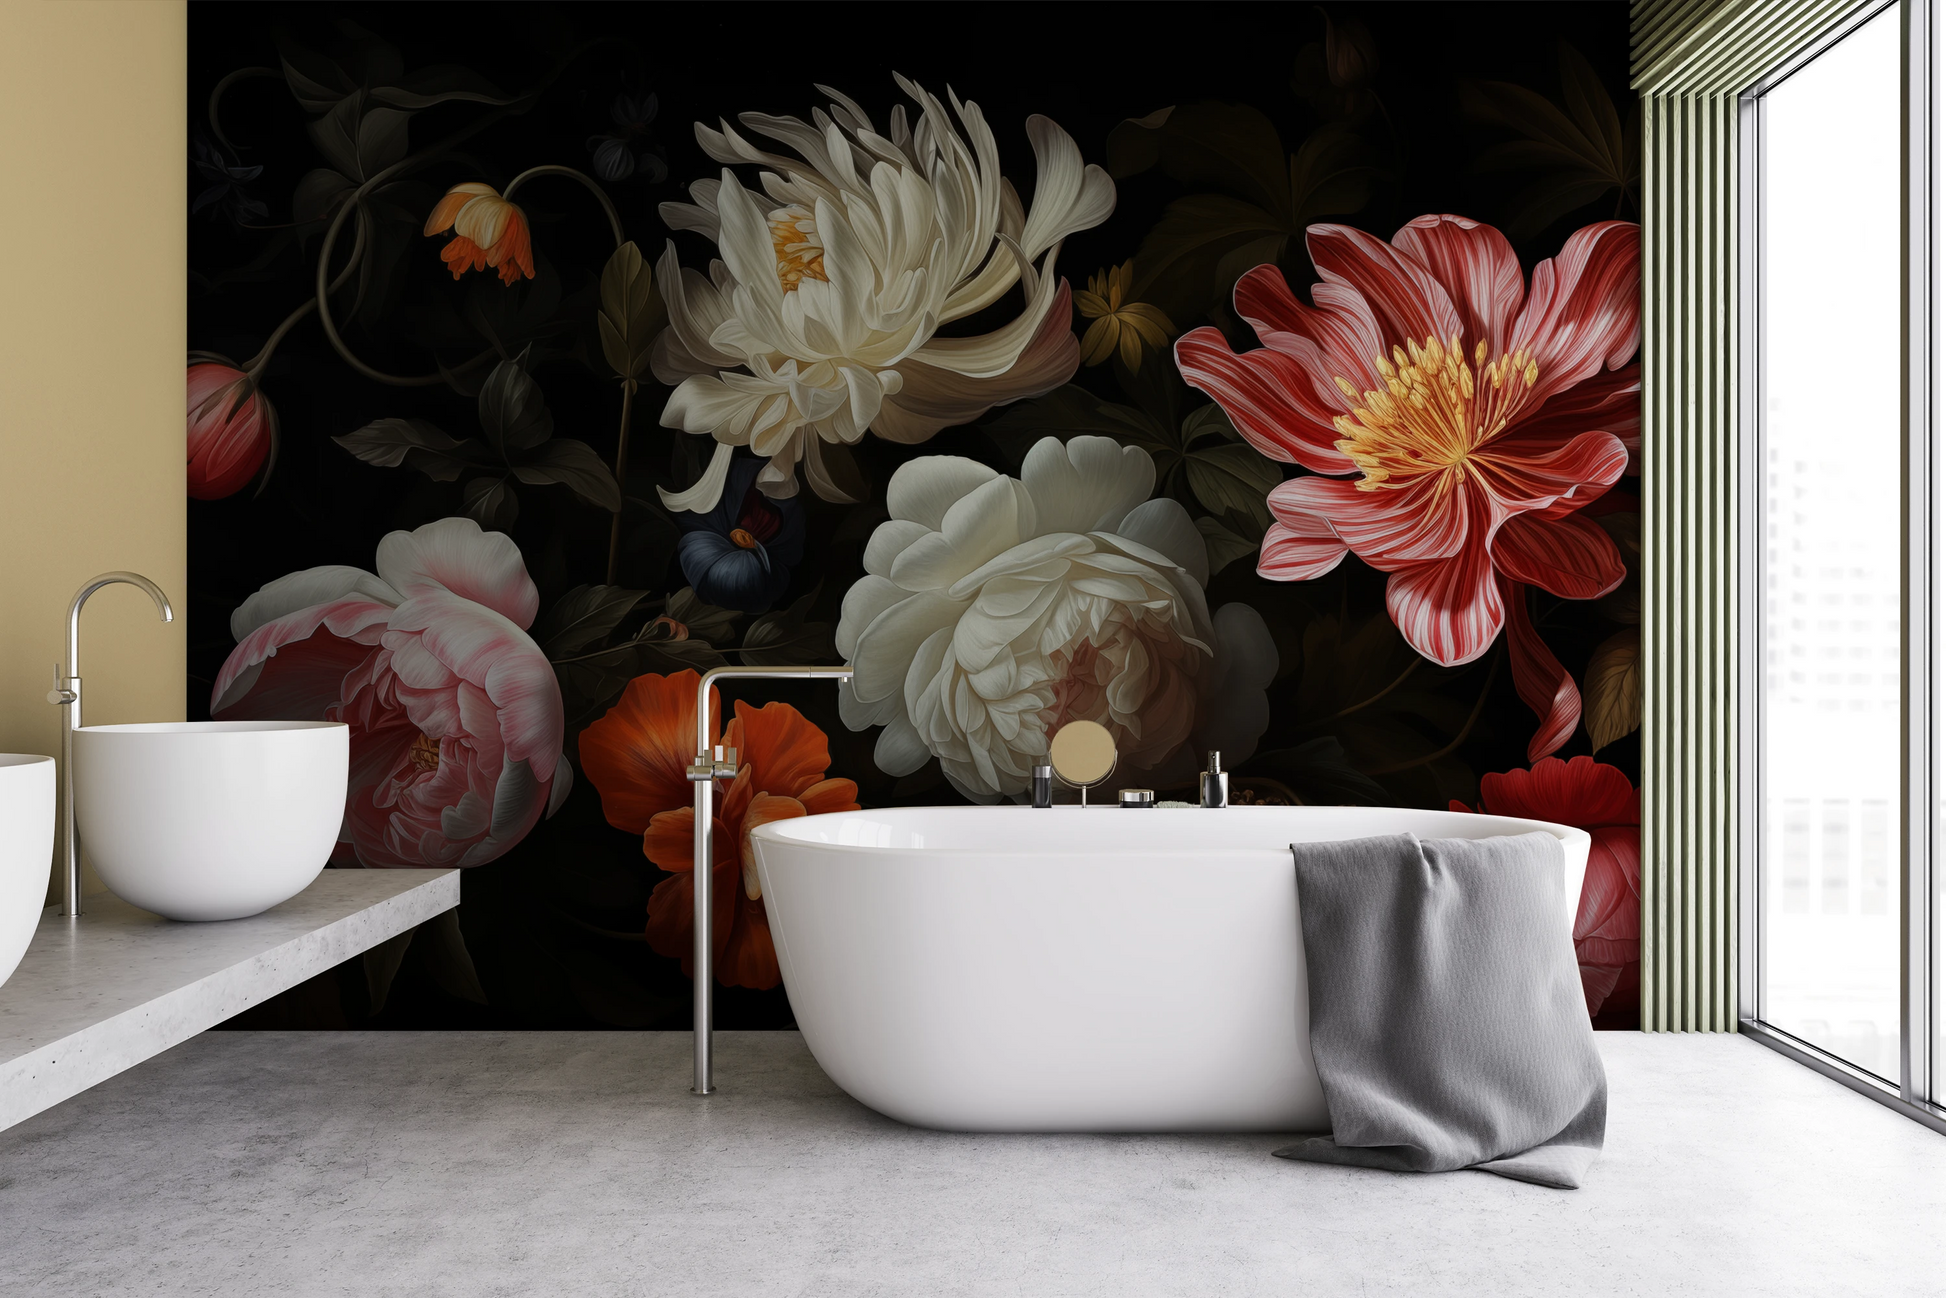 Fototapeta artystyczna o nazwie Dutch Floral Masterpiece pokazana w aranżacji wnętrza.